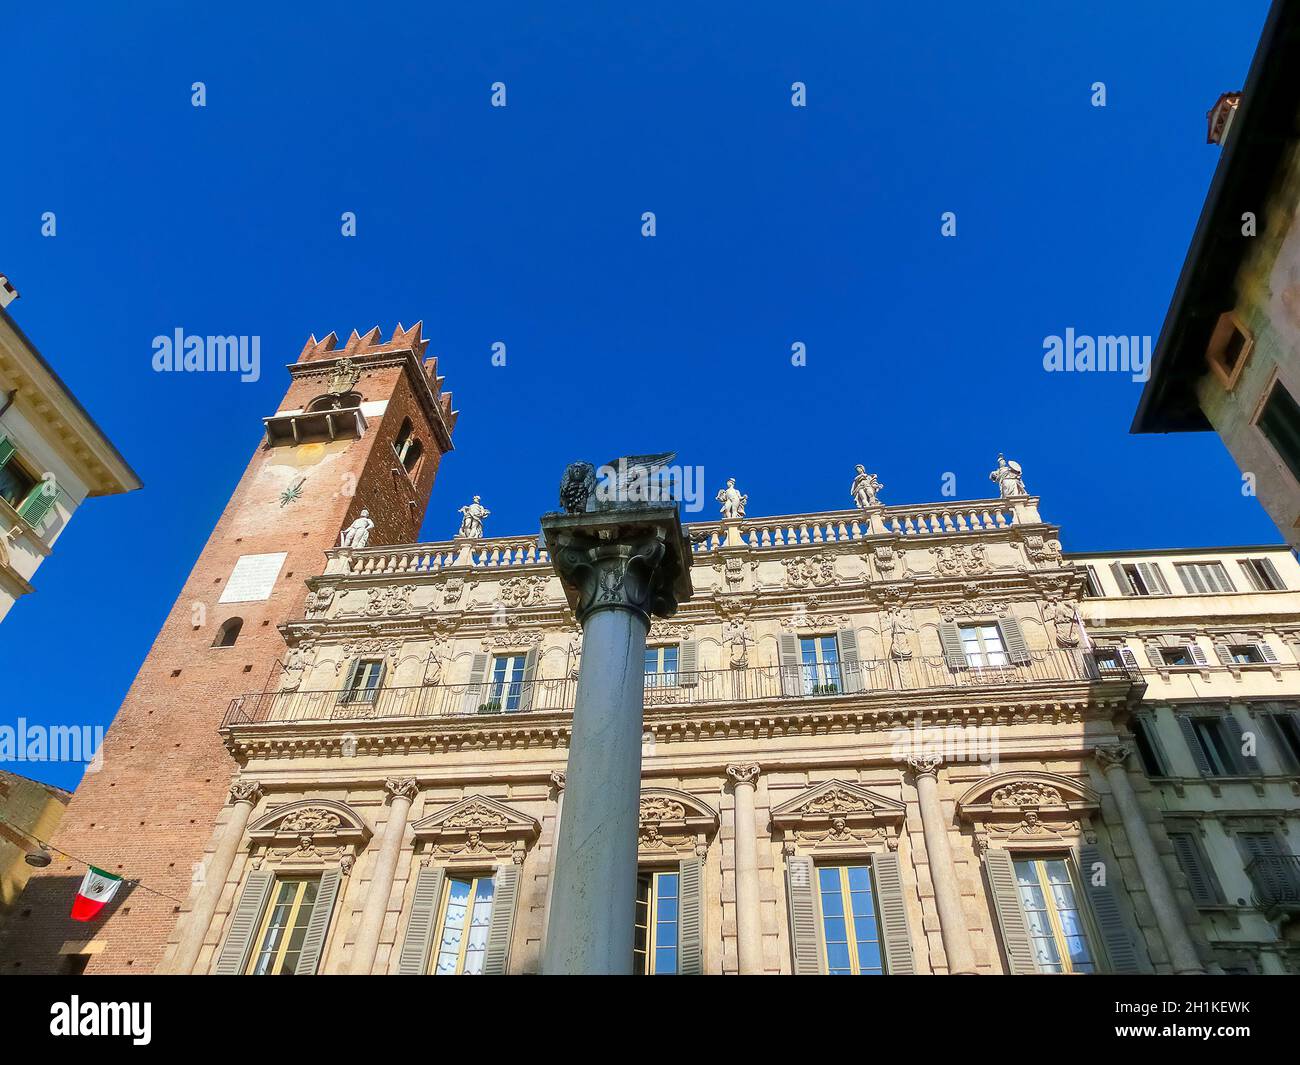 Verona, Italia - 22 de septiembre de 2014: El león alado de San Marcos, símbolo de la República de Venecia, en la Piazza delle Erbe, en Verona el 22 de septiembre, 2014 Foto de stock